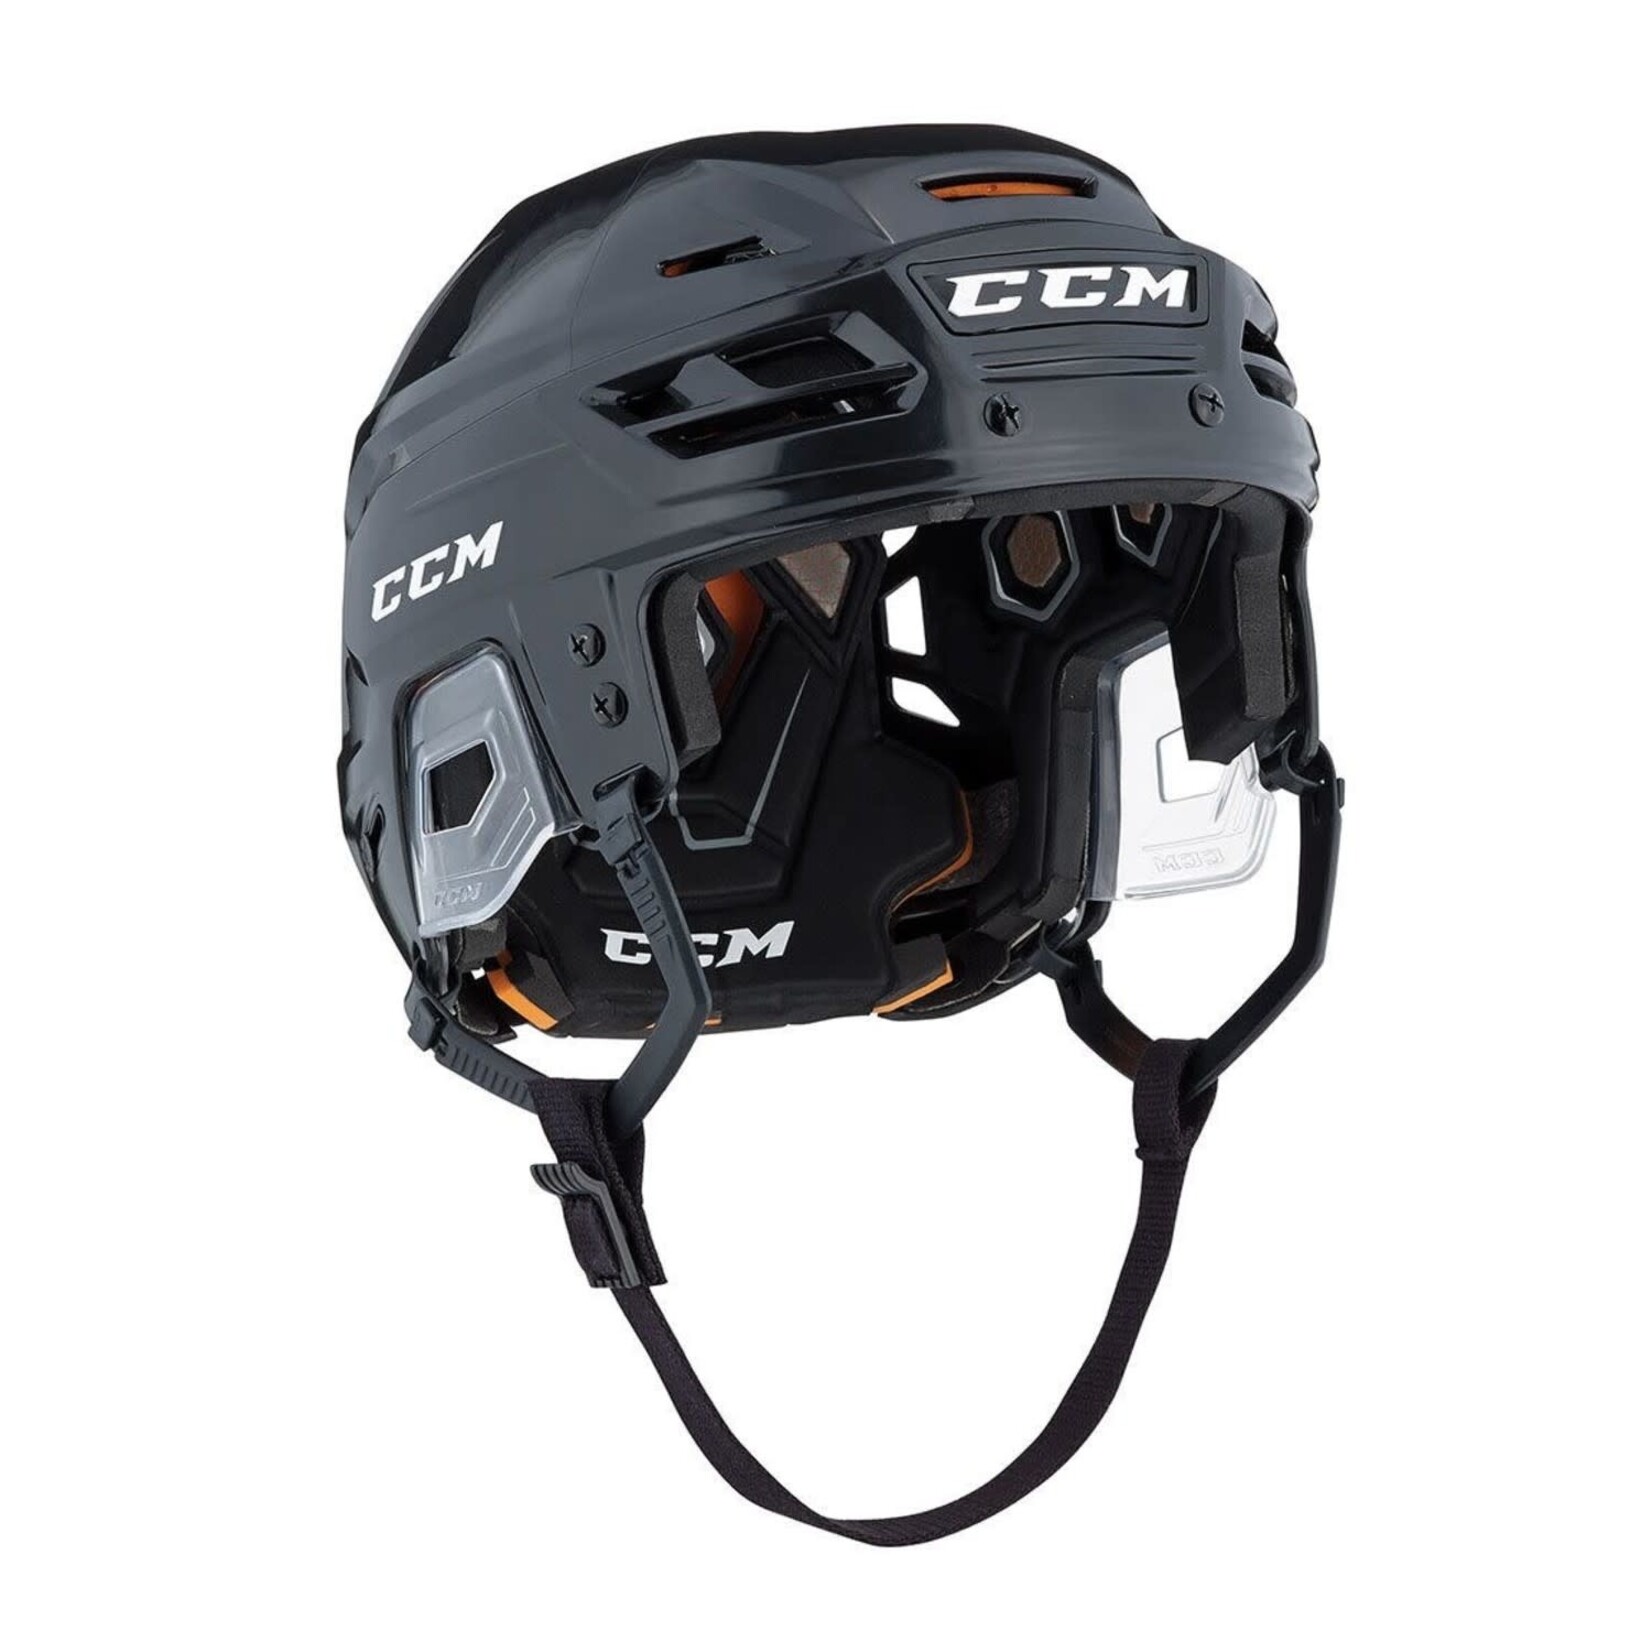 CCM CCM Hockey Helmet, Tacks 710, Senior